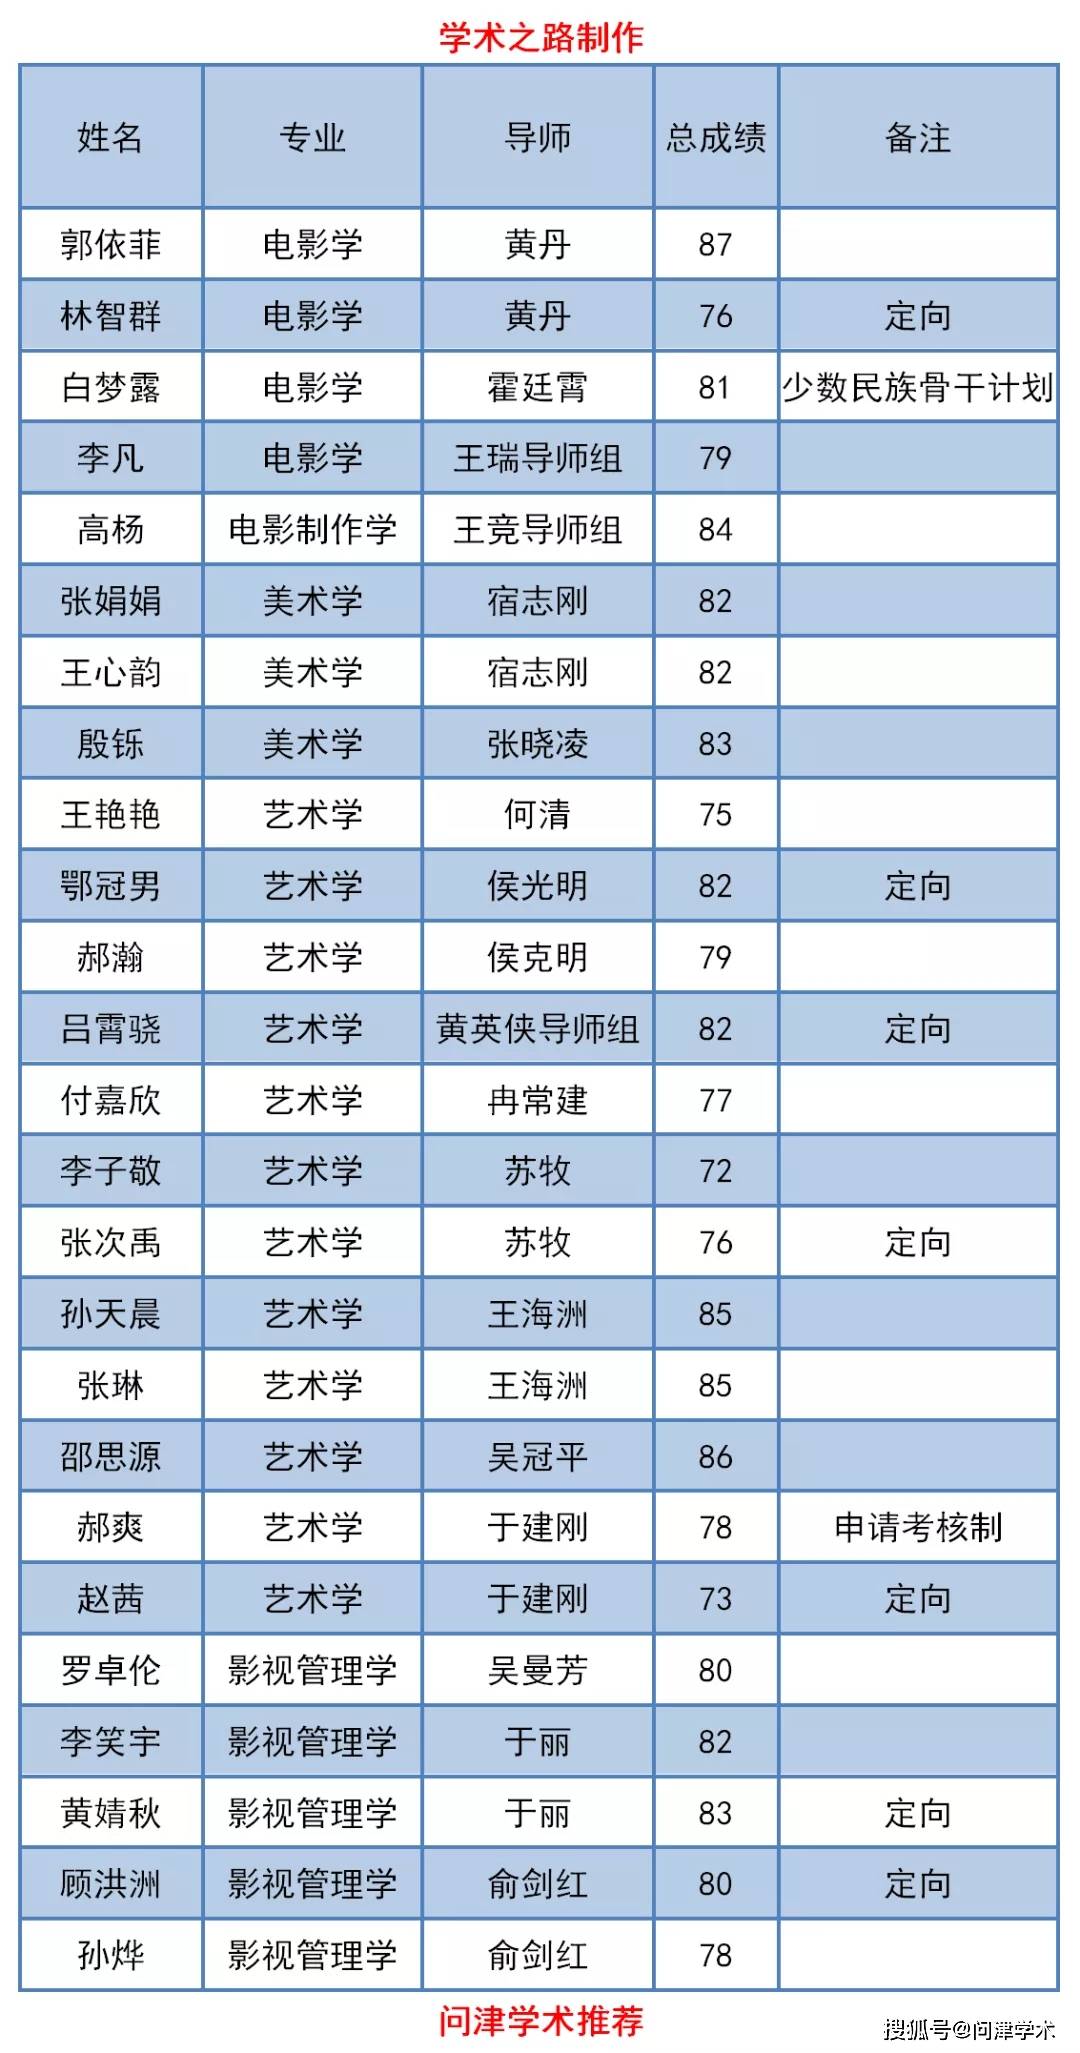 北京电影学院2020年博士研究生拟录取名单